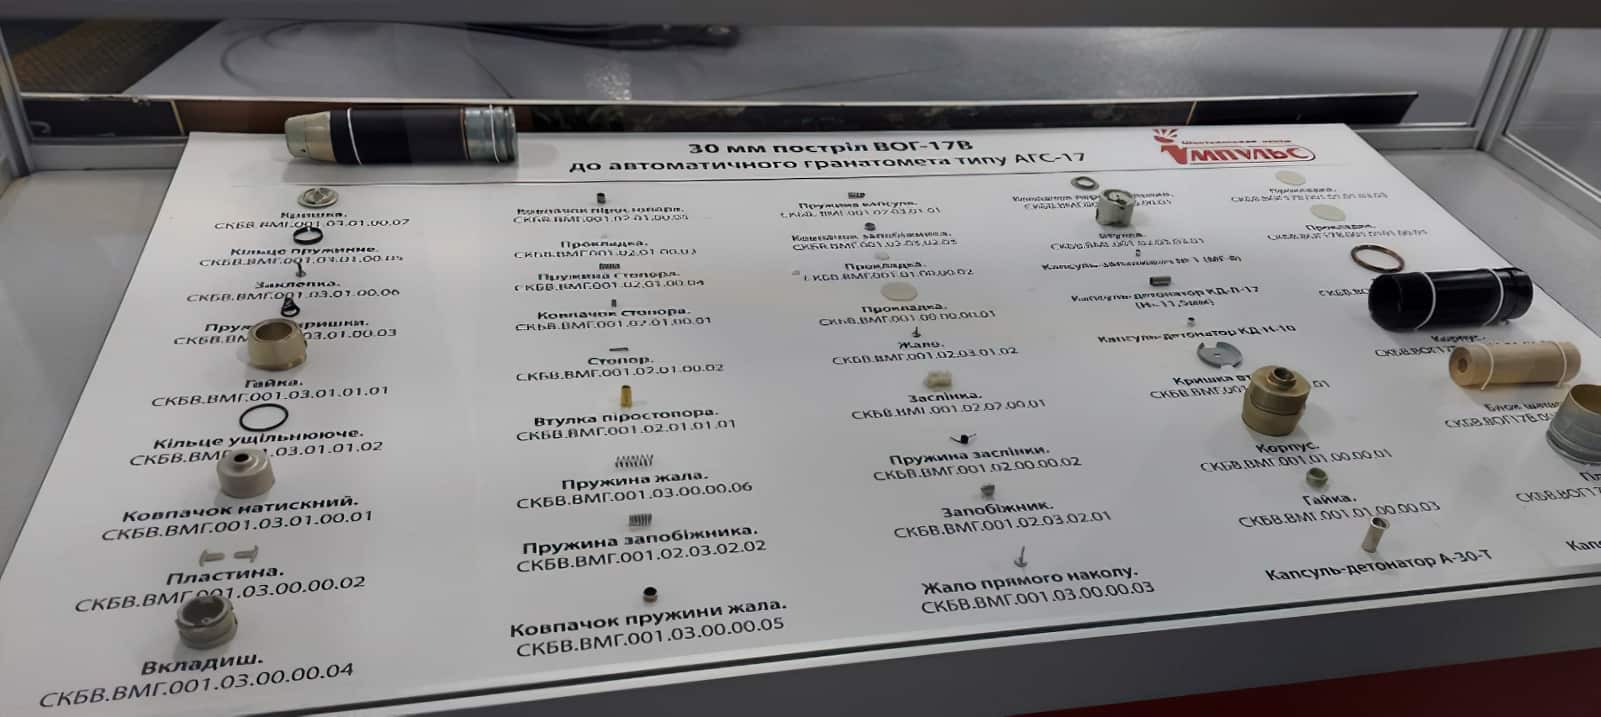 Складові гранатометного пострілу ВОГ-17 українського виробництва на ДП «Імпульс»